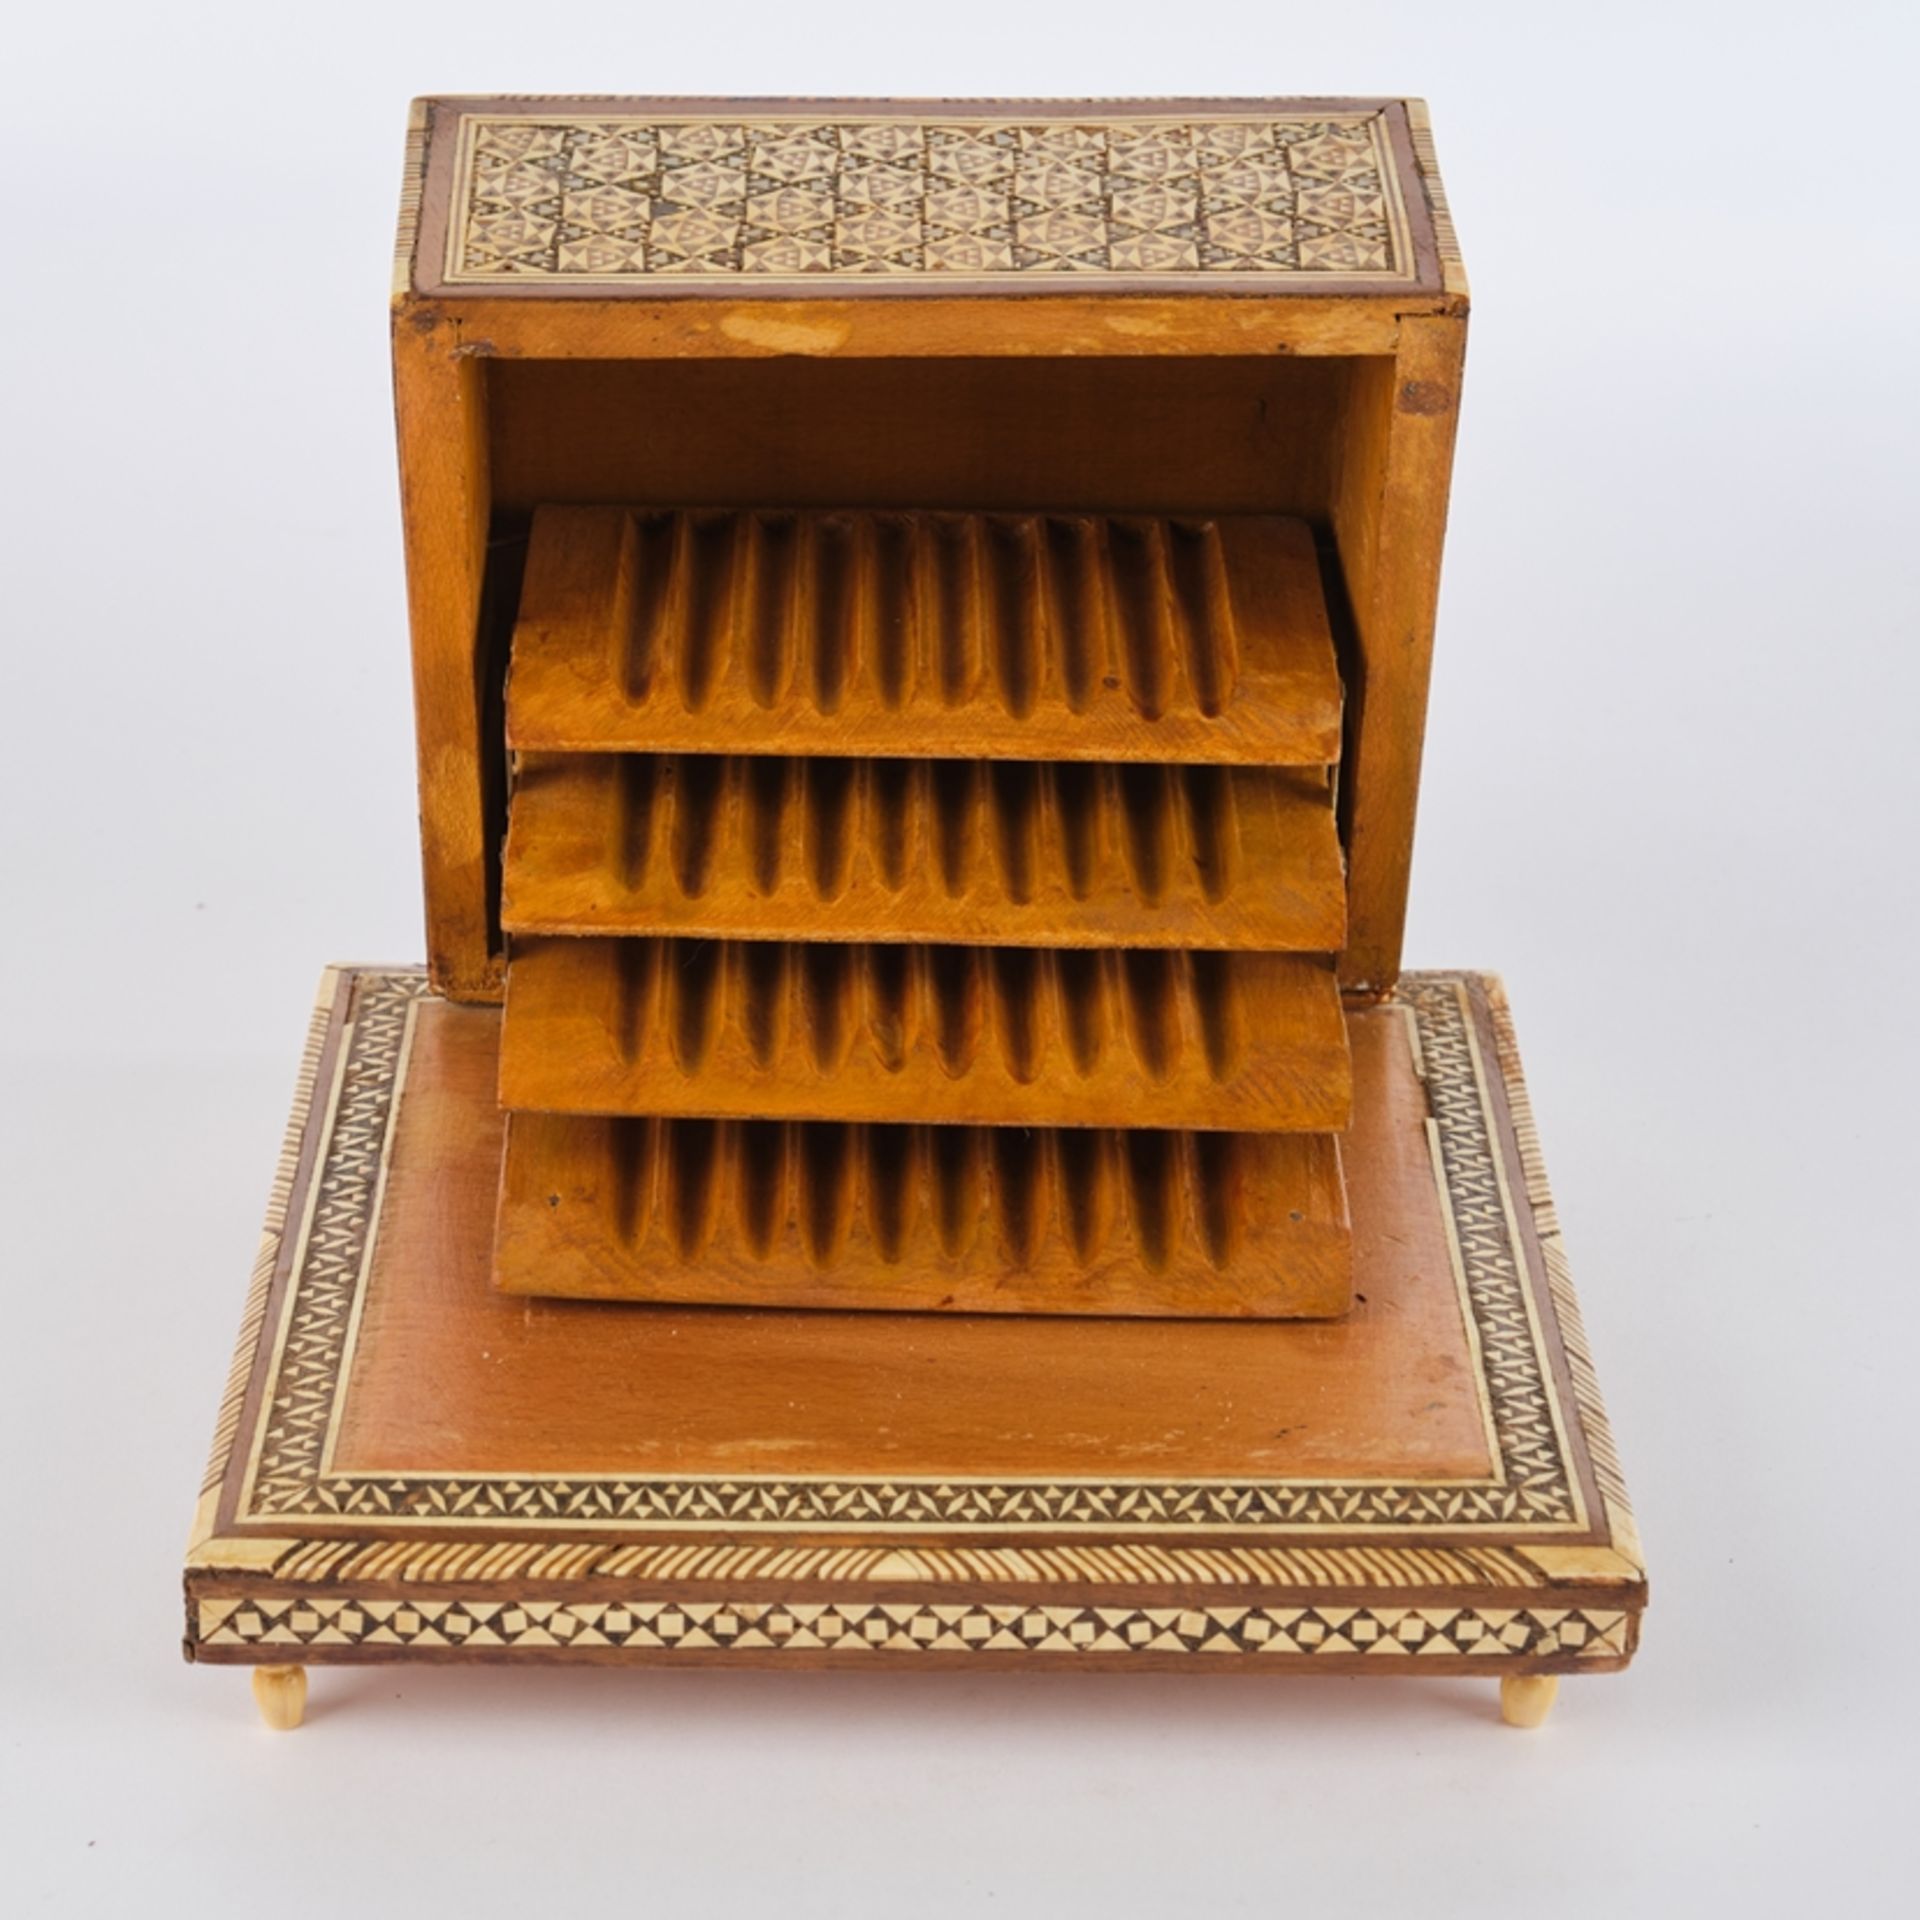 Zigarettenkasten, 1. Hälfte 20. Jh., Holz, Bein, Perlmutt, orientalischer Dekor, aufklappbar, innen - Image 2 of 2